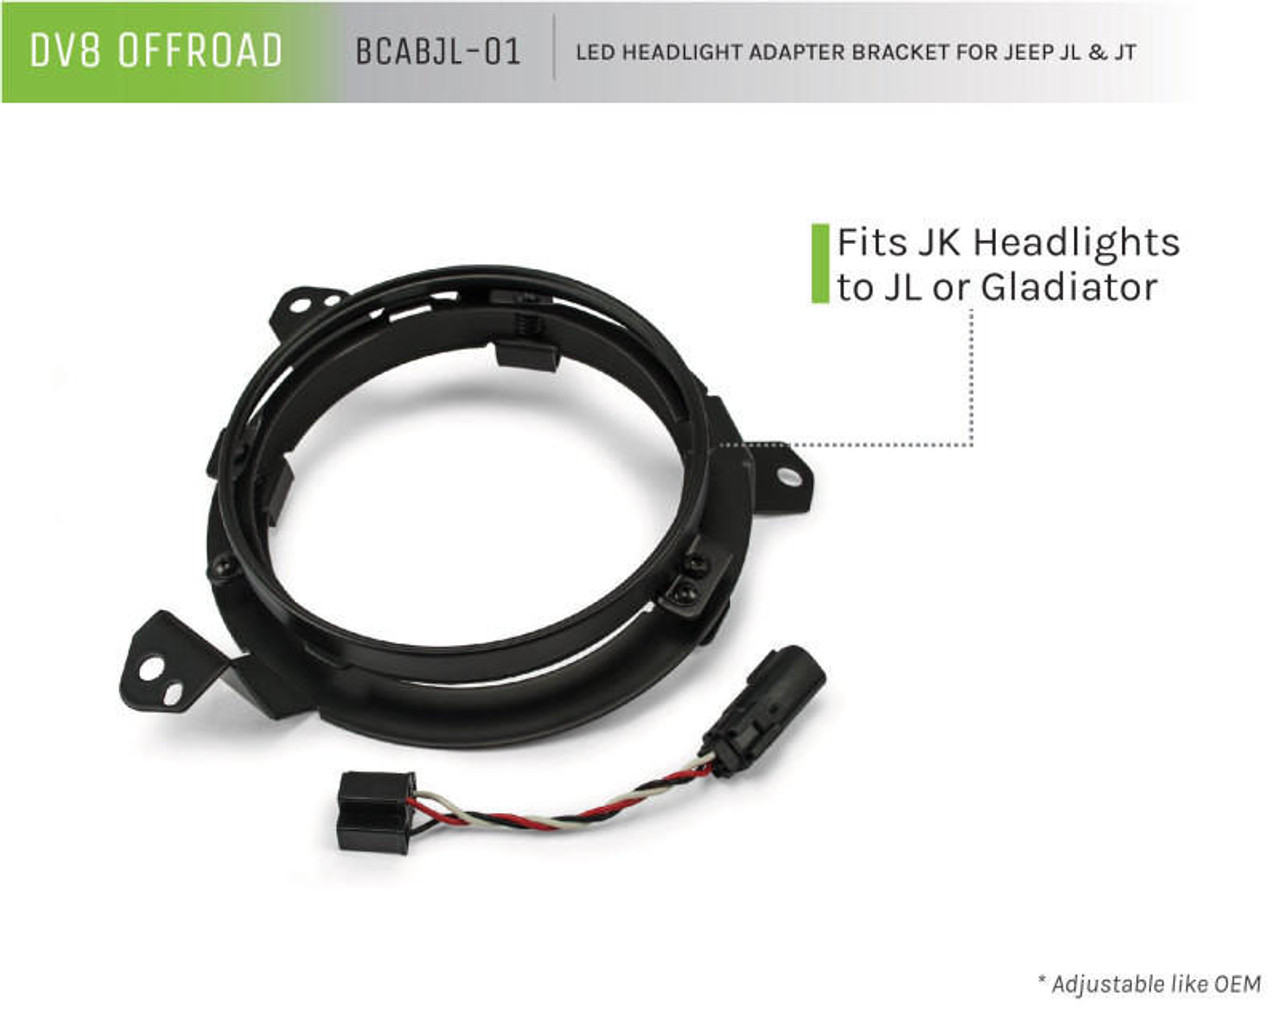  DV8 Offroad 18+ Jeep JL/Gladiator TJ / 7in Headlights Adapter Kit - BCABJL-01 